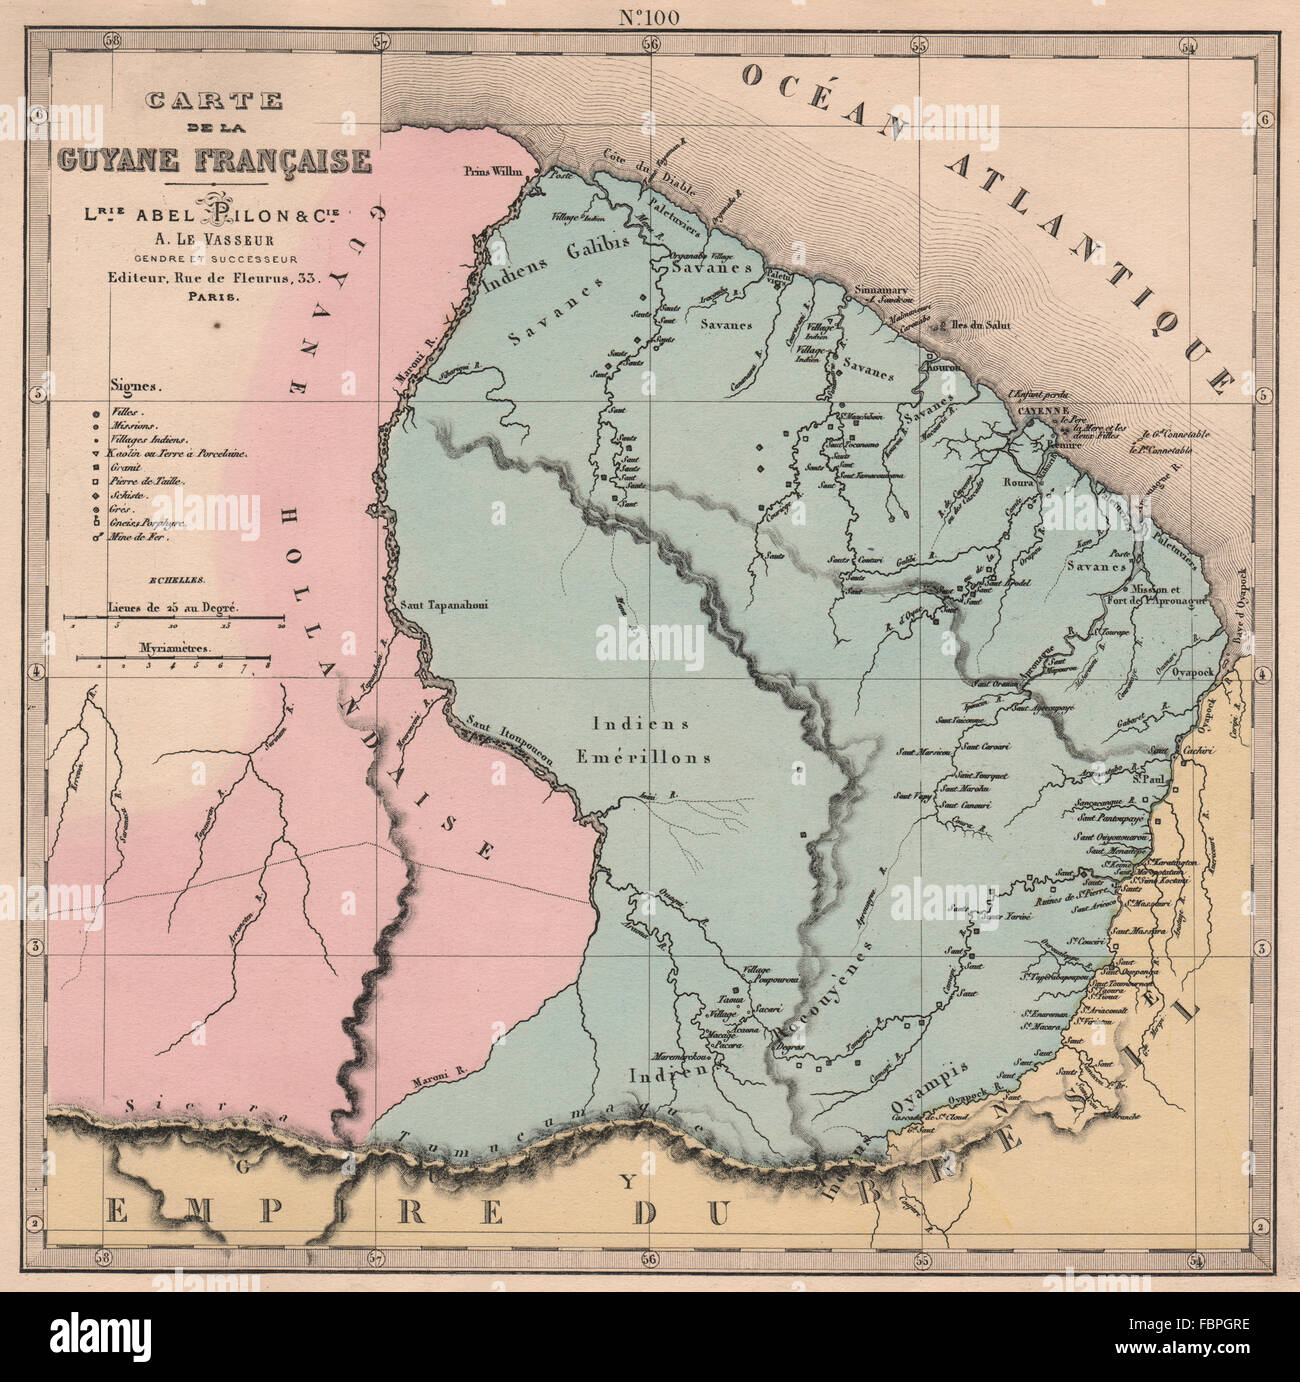 GUYANE FRANÇAISE. Guyane française. Les missions. Villages indiens. LE VASSEUR, 1876 map Banque D'Images